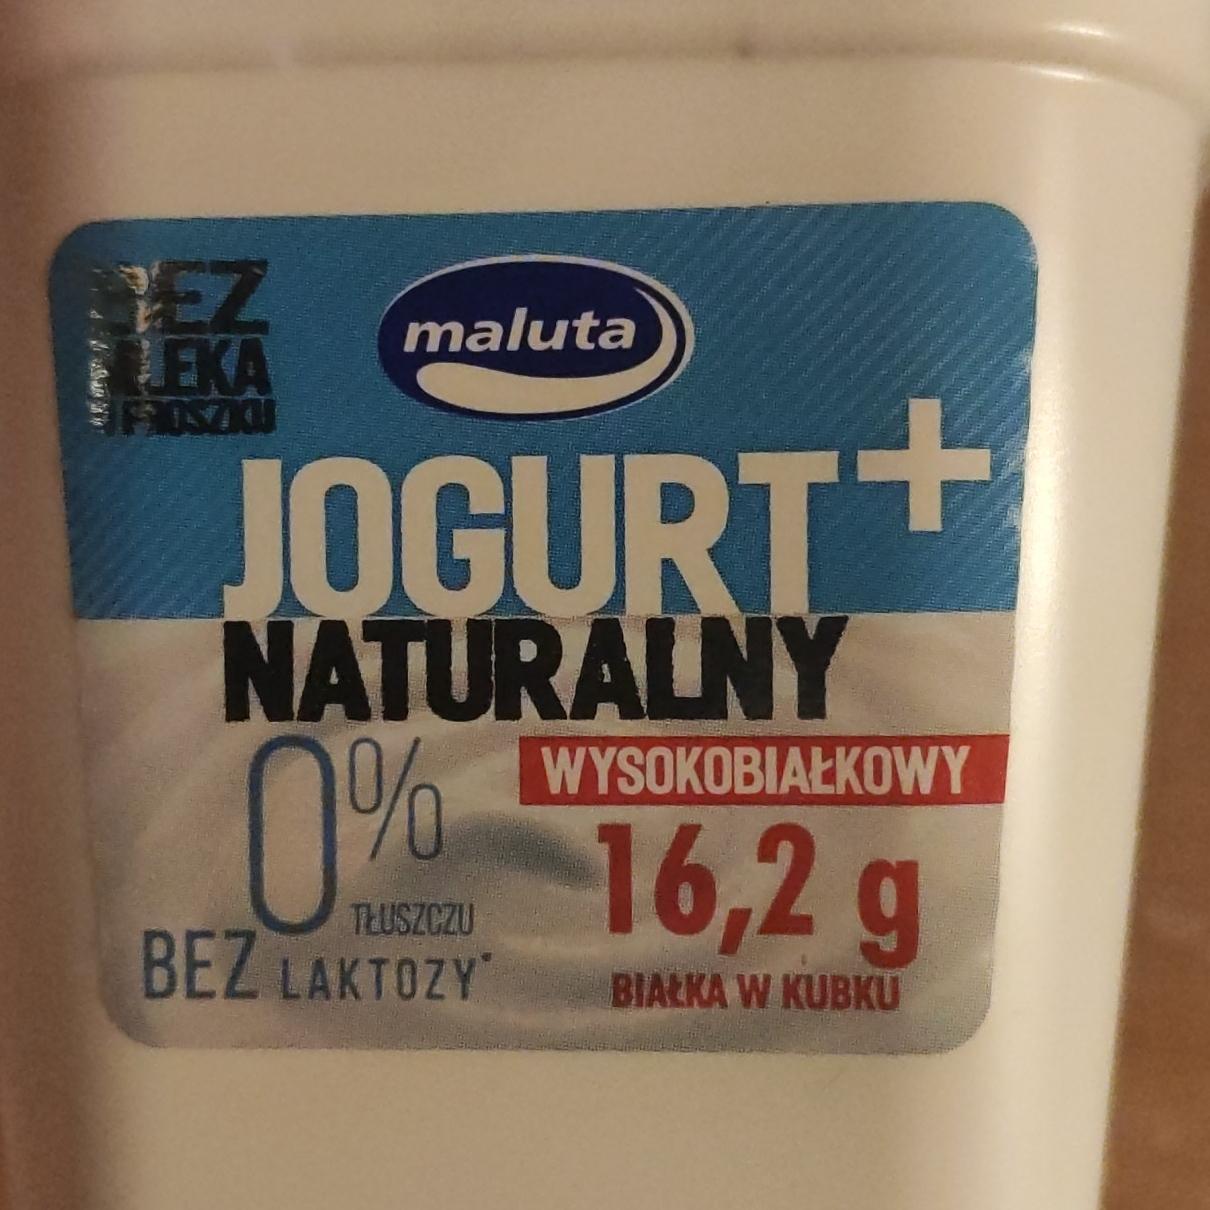 Fotografie - Jogurt naturalny wysokobialkowy bez laktory Maluta